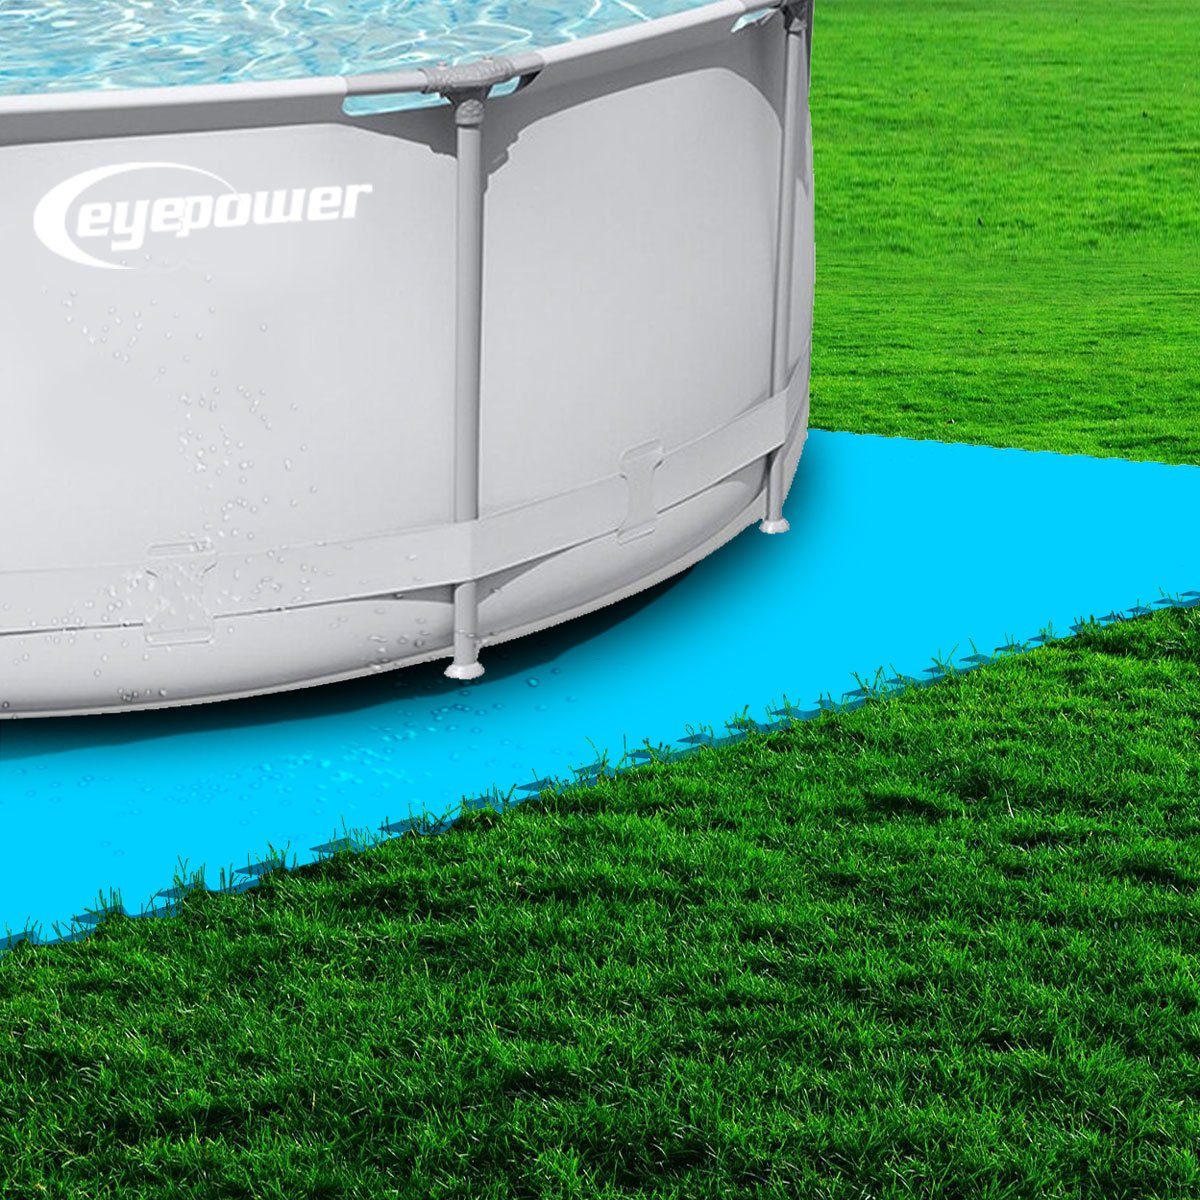 Schwimmbad-Bodenmatte, rechteckige Boden-Poolmatte für 300x200cm